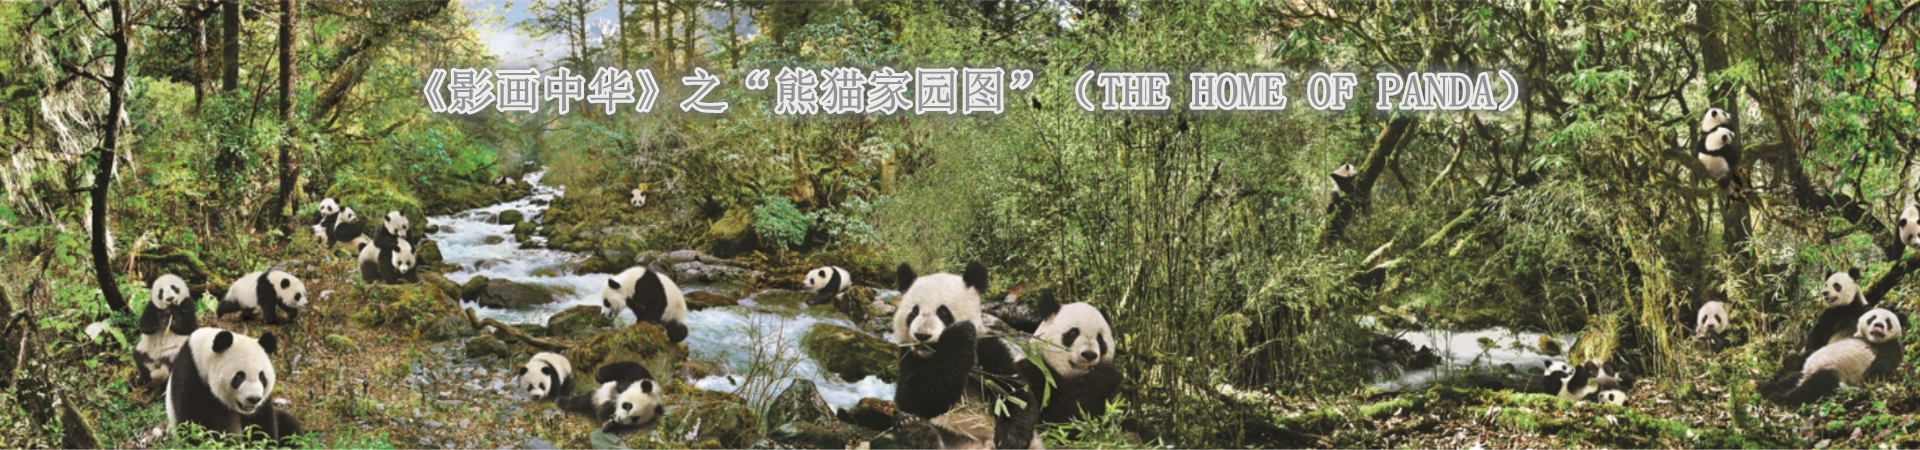 网站首页图-熊猫1